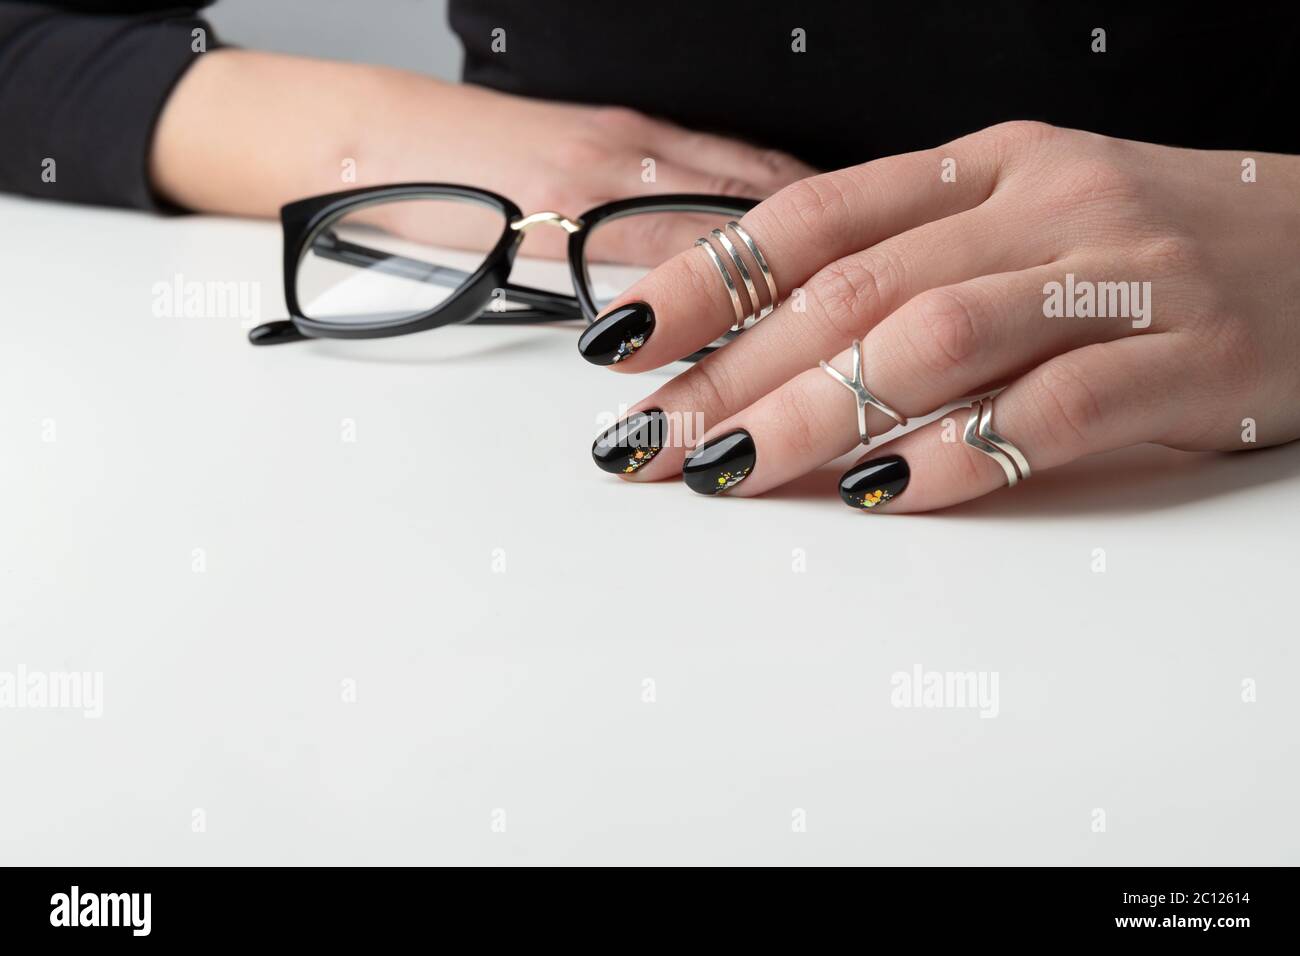 Belle main de femme avec manucure élégante. Motif cloueur noir minimal  Photo Stock - Alamy